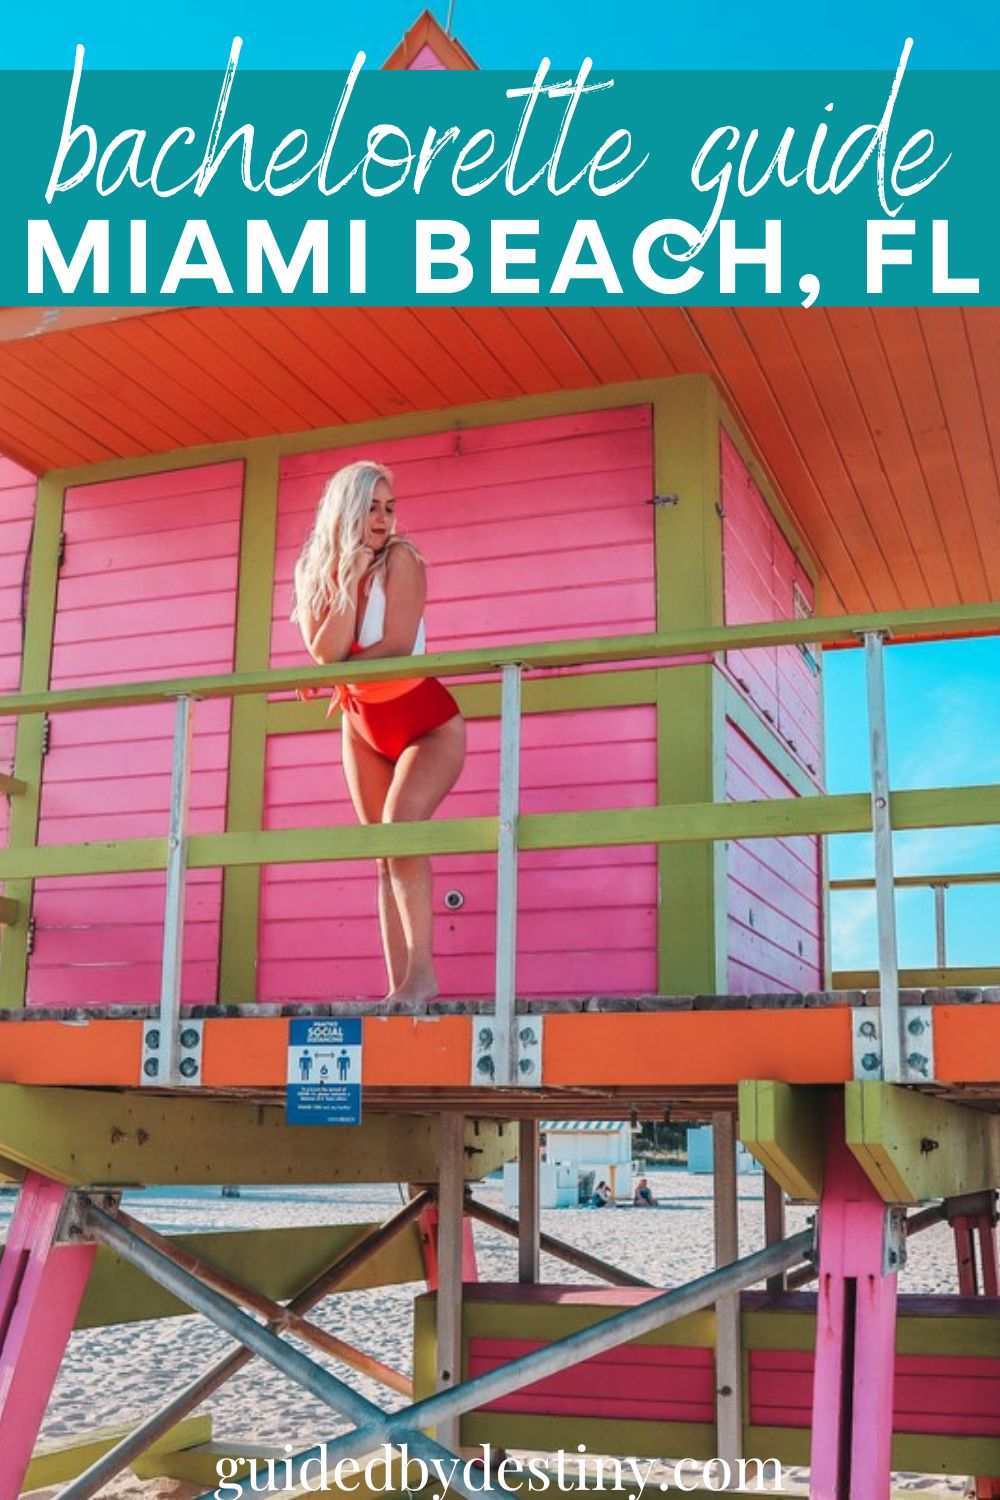 Bachelorette guide Miami Beach, Florida